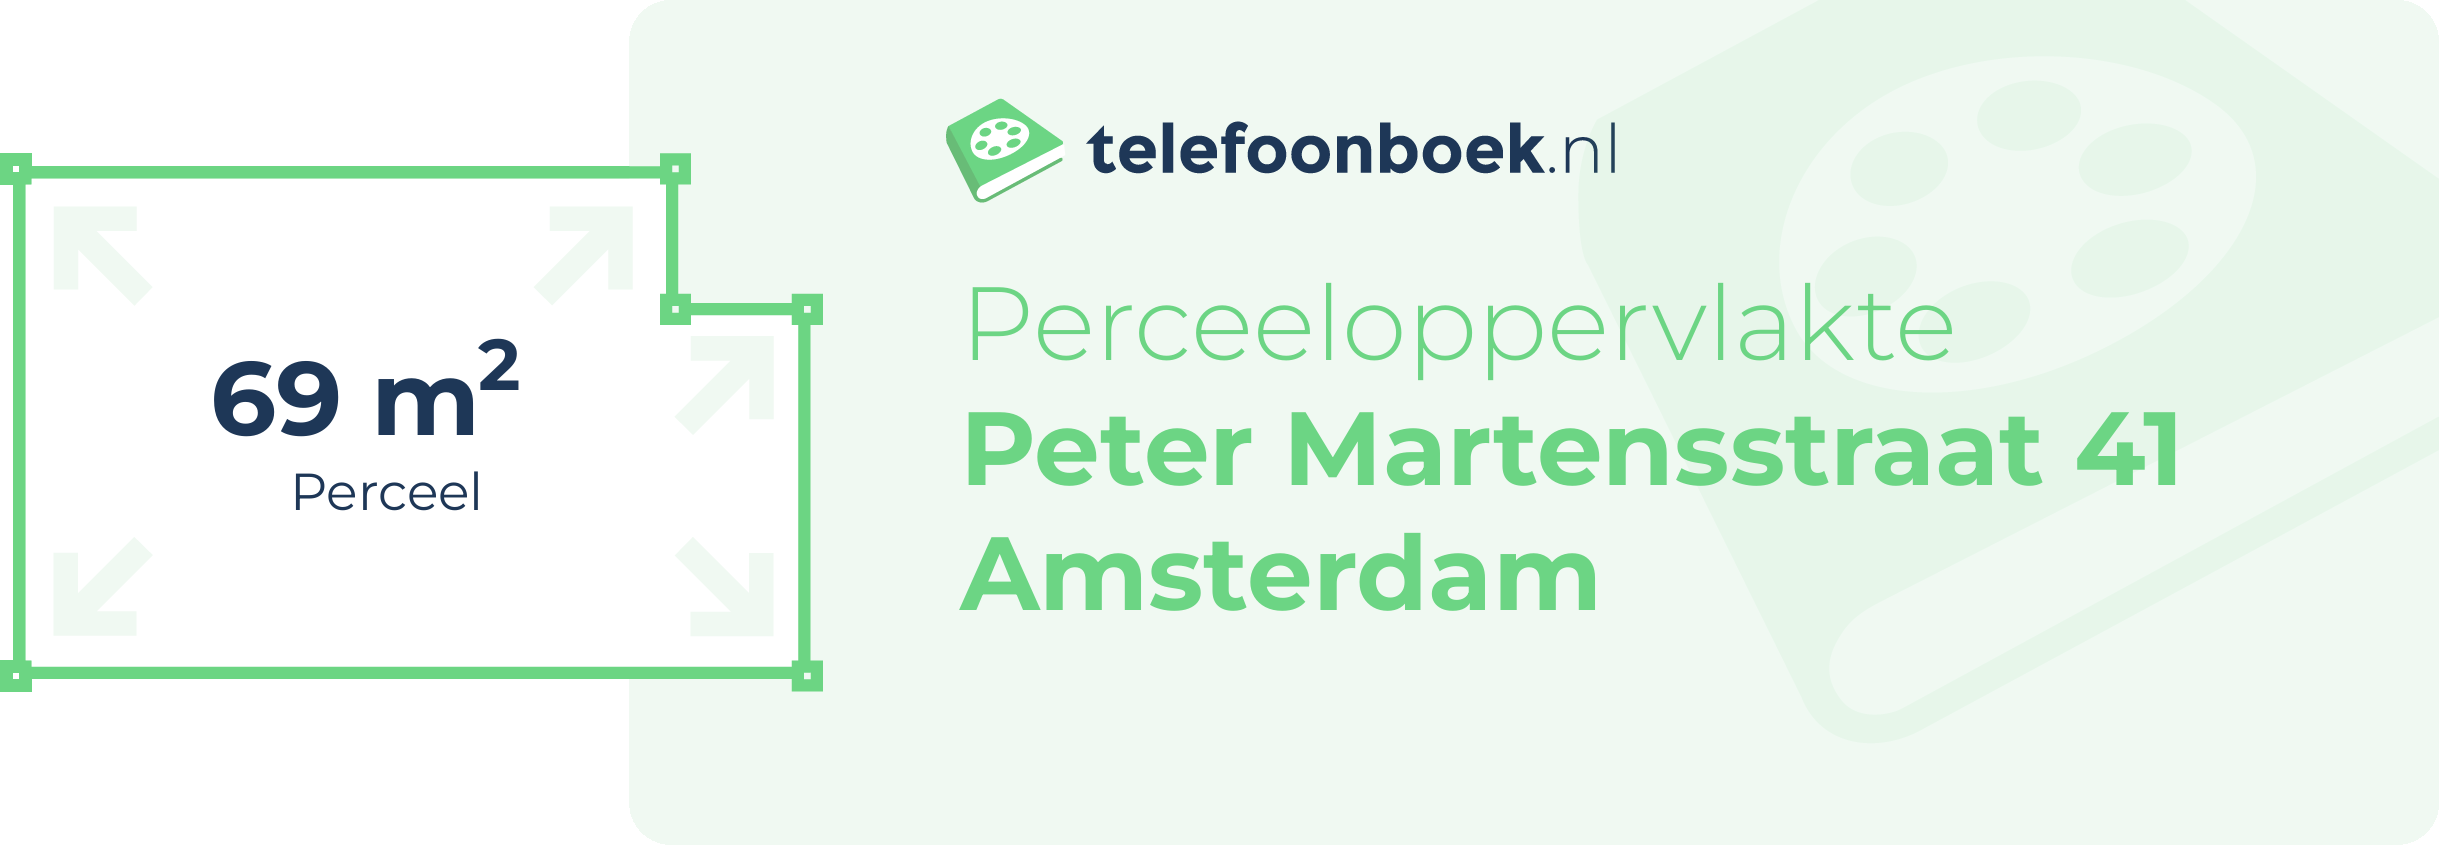 Perceeloppervlakte Peter Martensstraat 41 Amsterdam